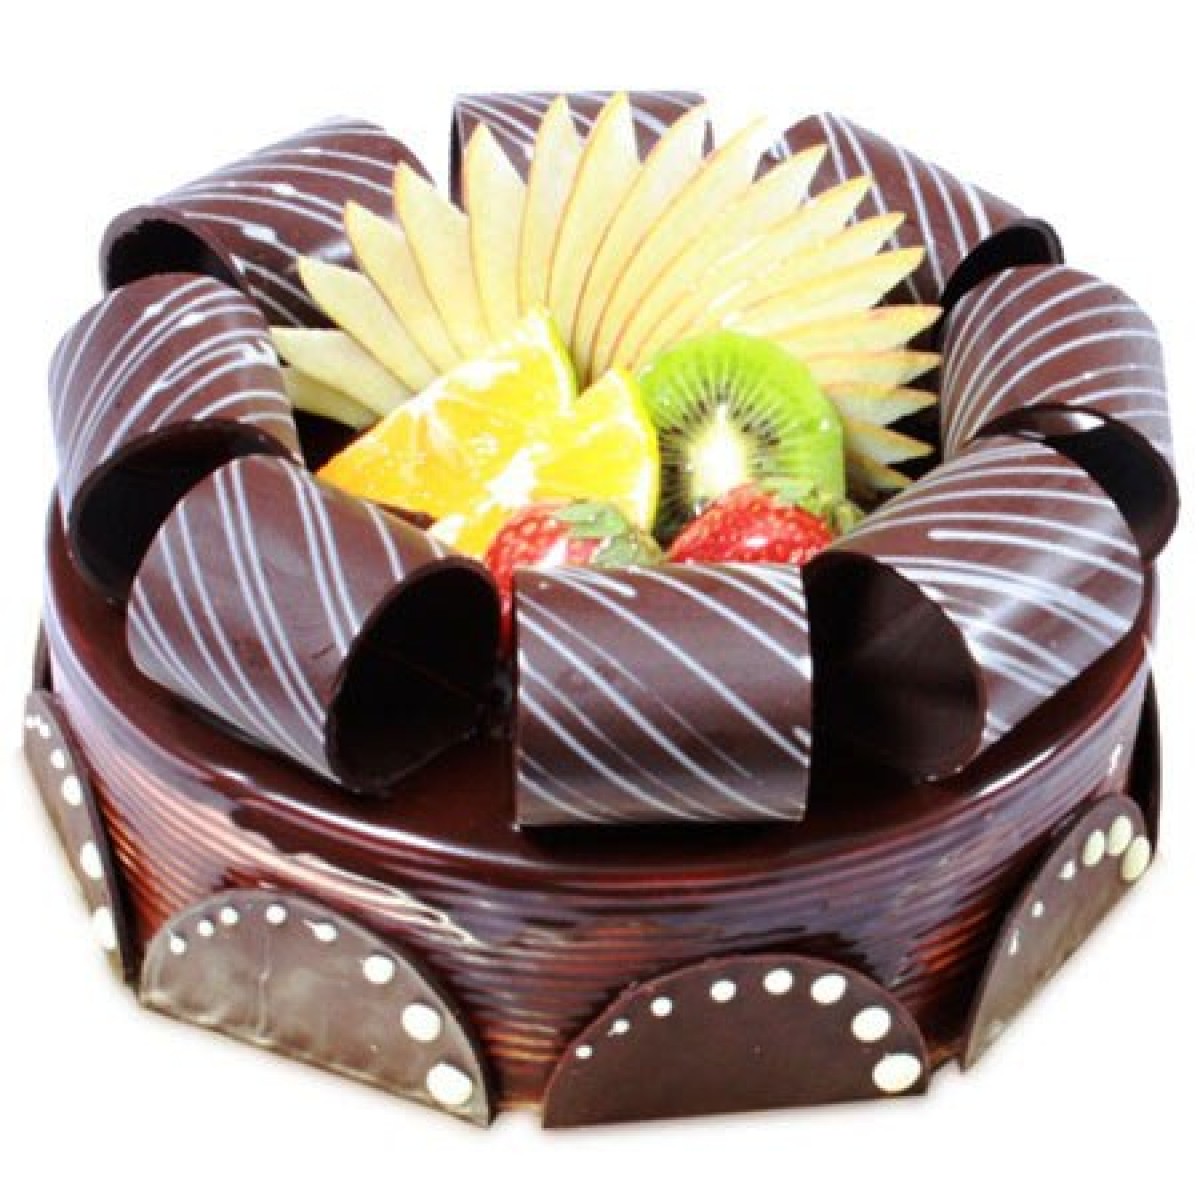 1 kg chocolate fruit premium quality cake 1950